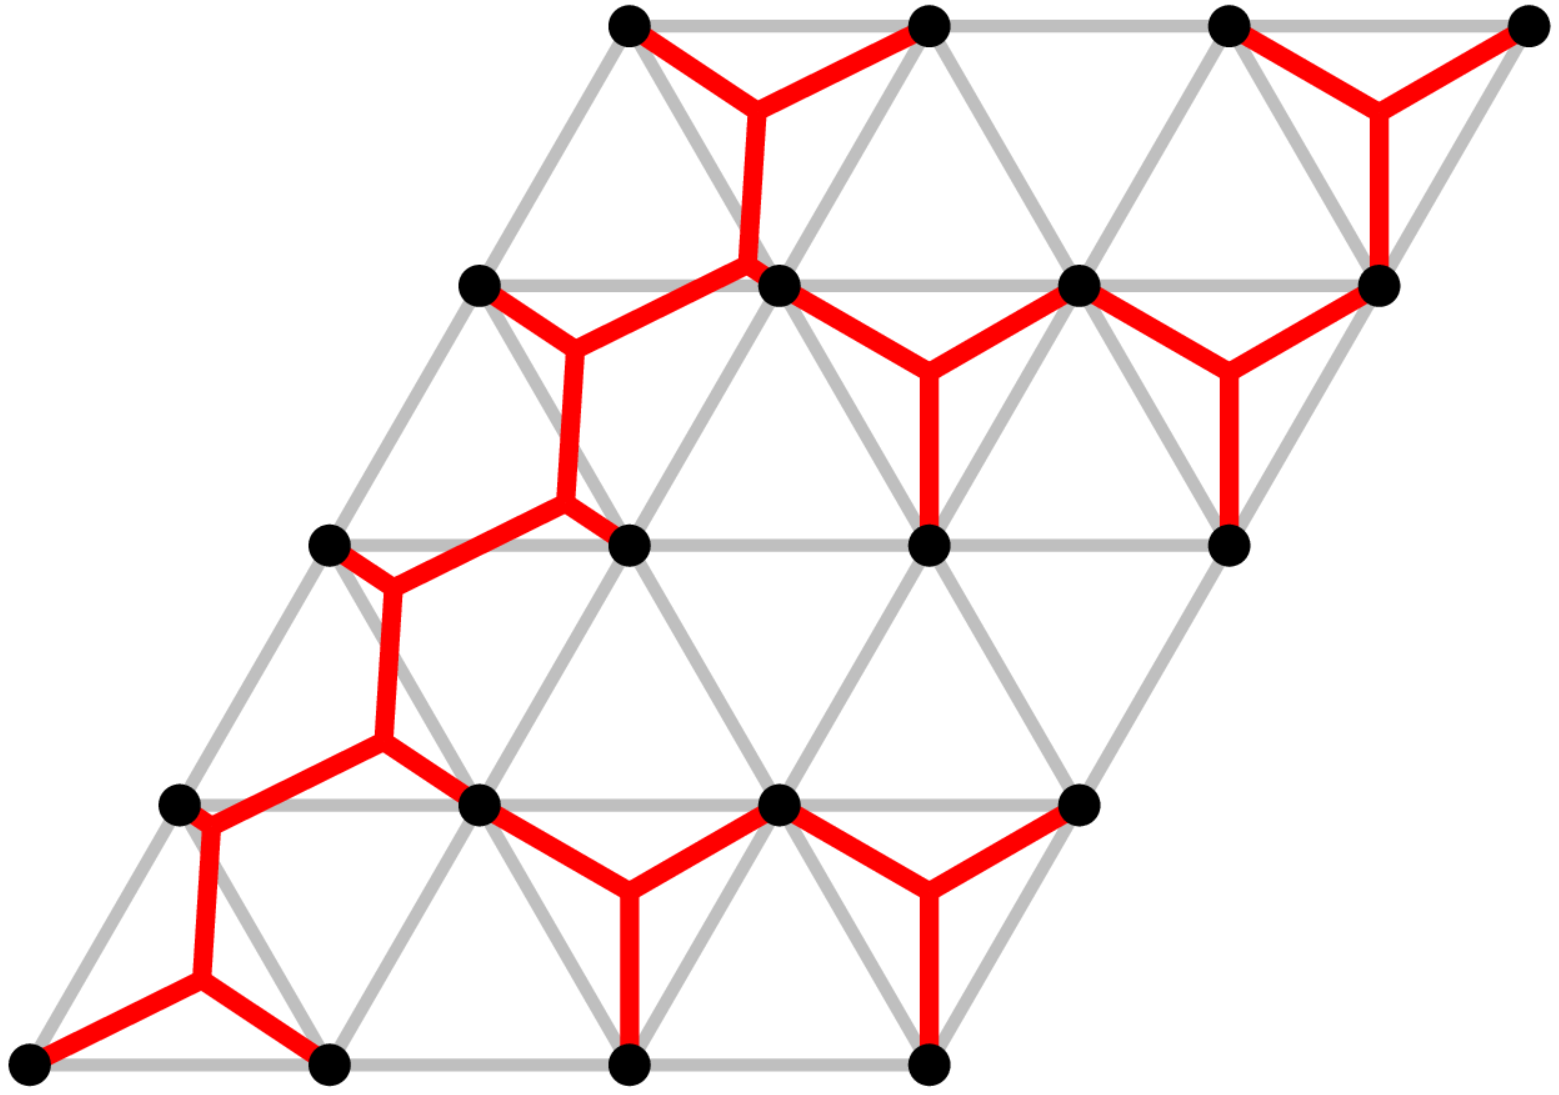 Triangular Grid Instances for the Euclidean Steiner Tree Problem